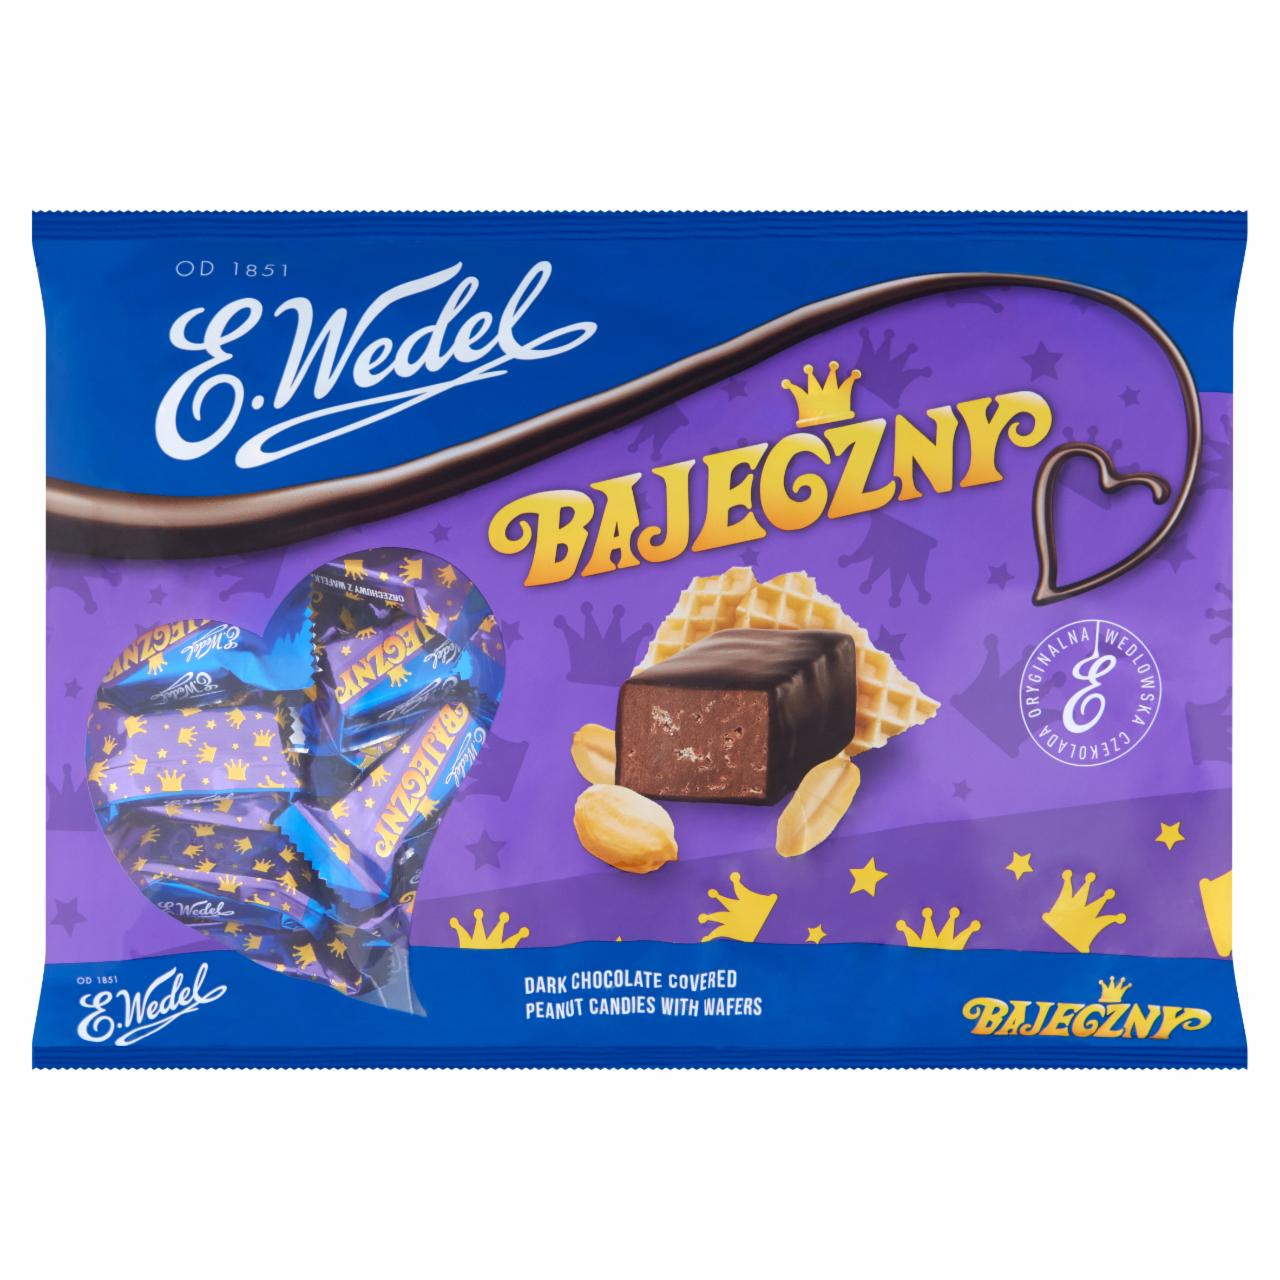 Zdjęcia - E. Wedel Bajeczny Cukierki orzechowe z wafelkami w czekoladzie deserowej 1 kg